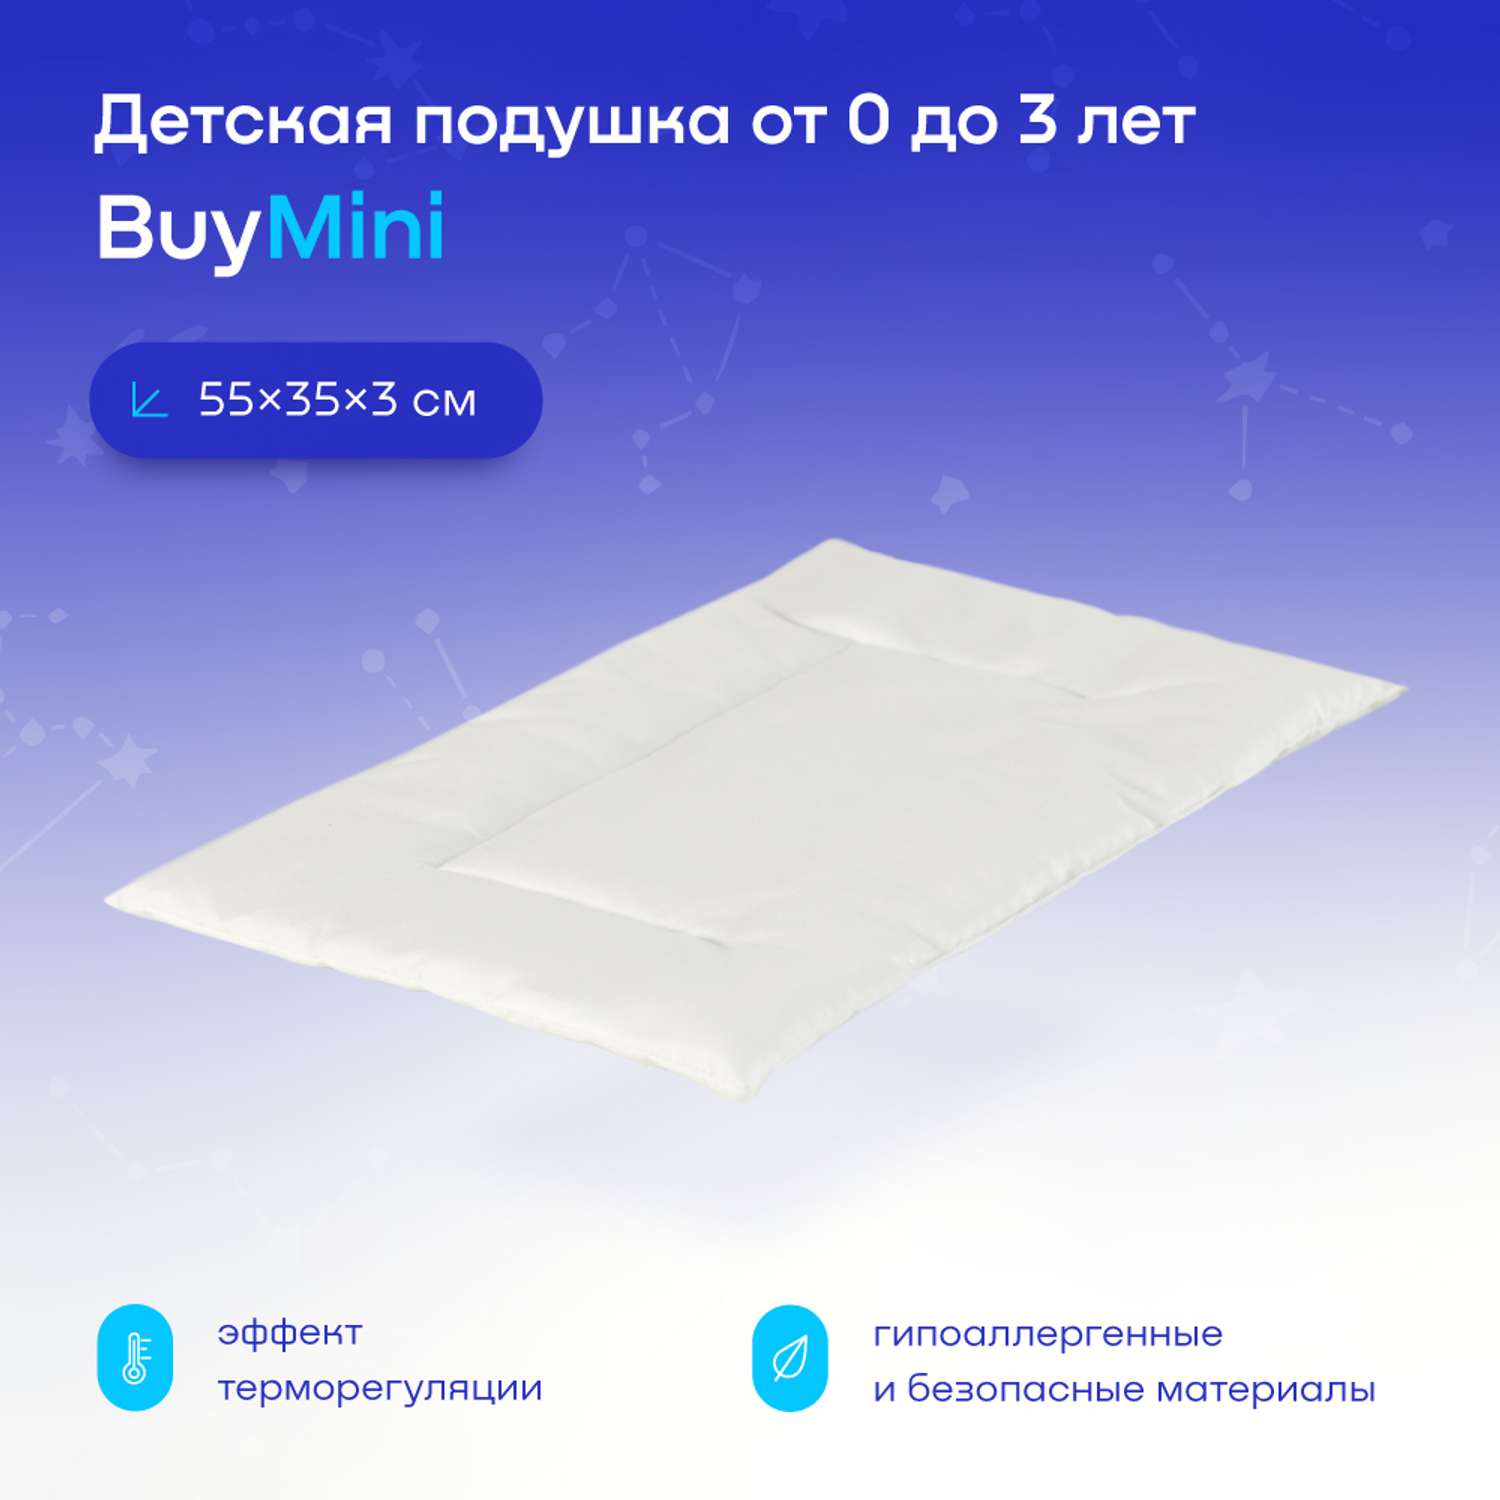 Анатомическая подушка buyson BuyMini для новорожденных от 0 до 3 лет 35х55 см высота 3 см - фото 1